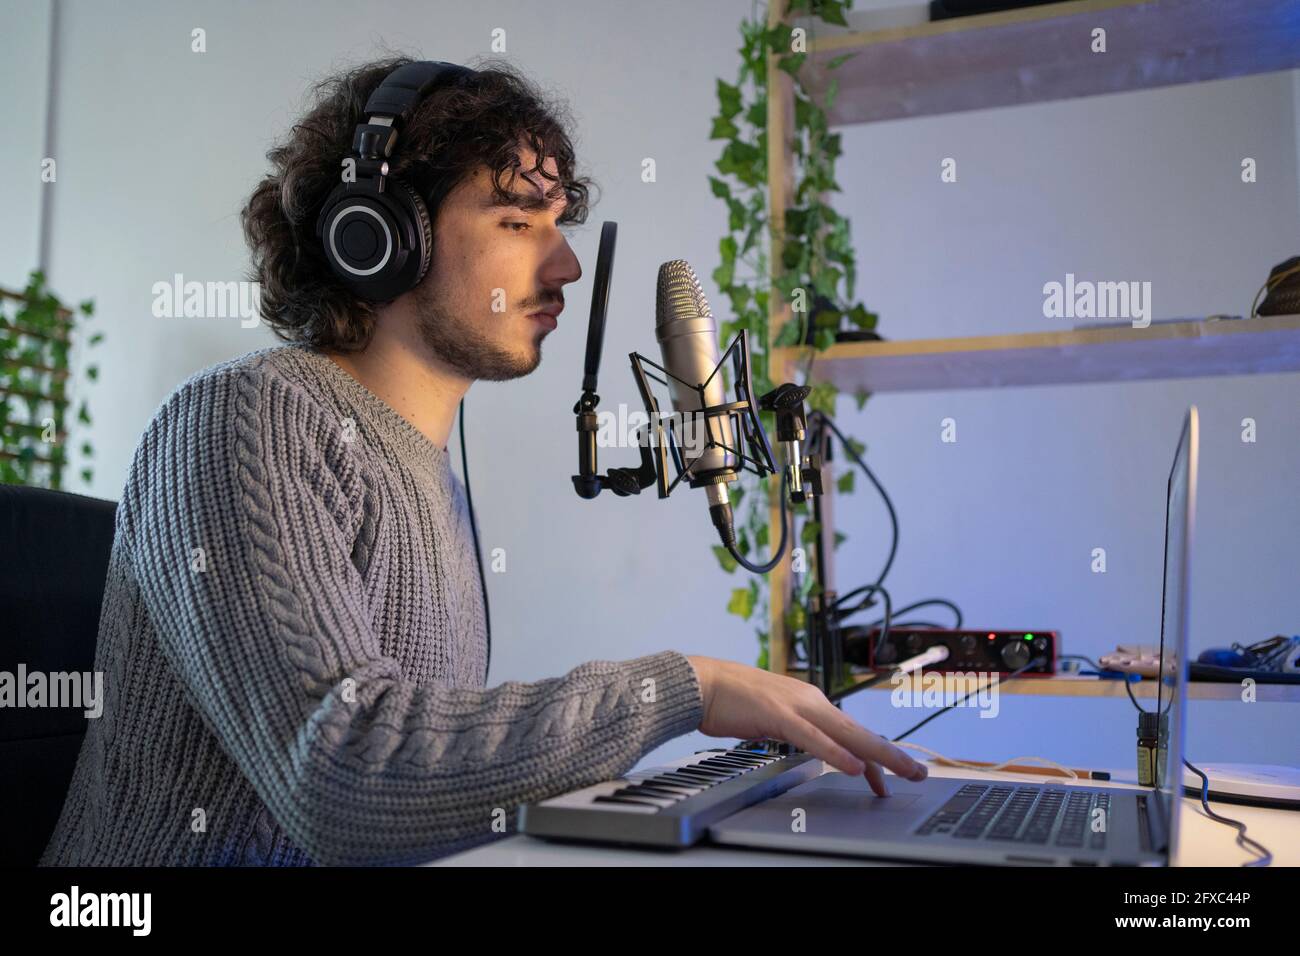 Compositeur de musique masculin avec équipement d'enregistrement sonore utilisant un ordinateur portable à la maison Banque D'Images